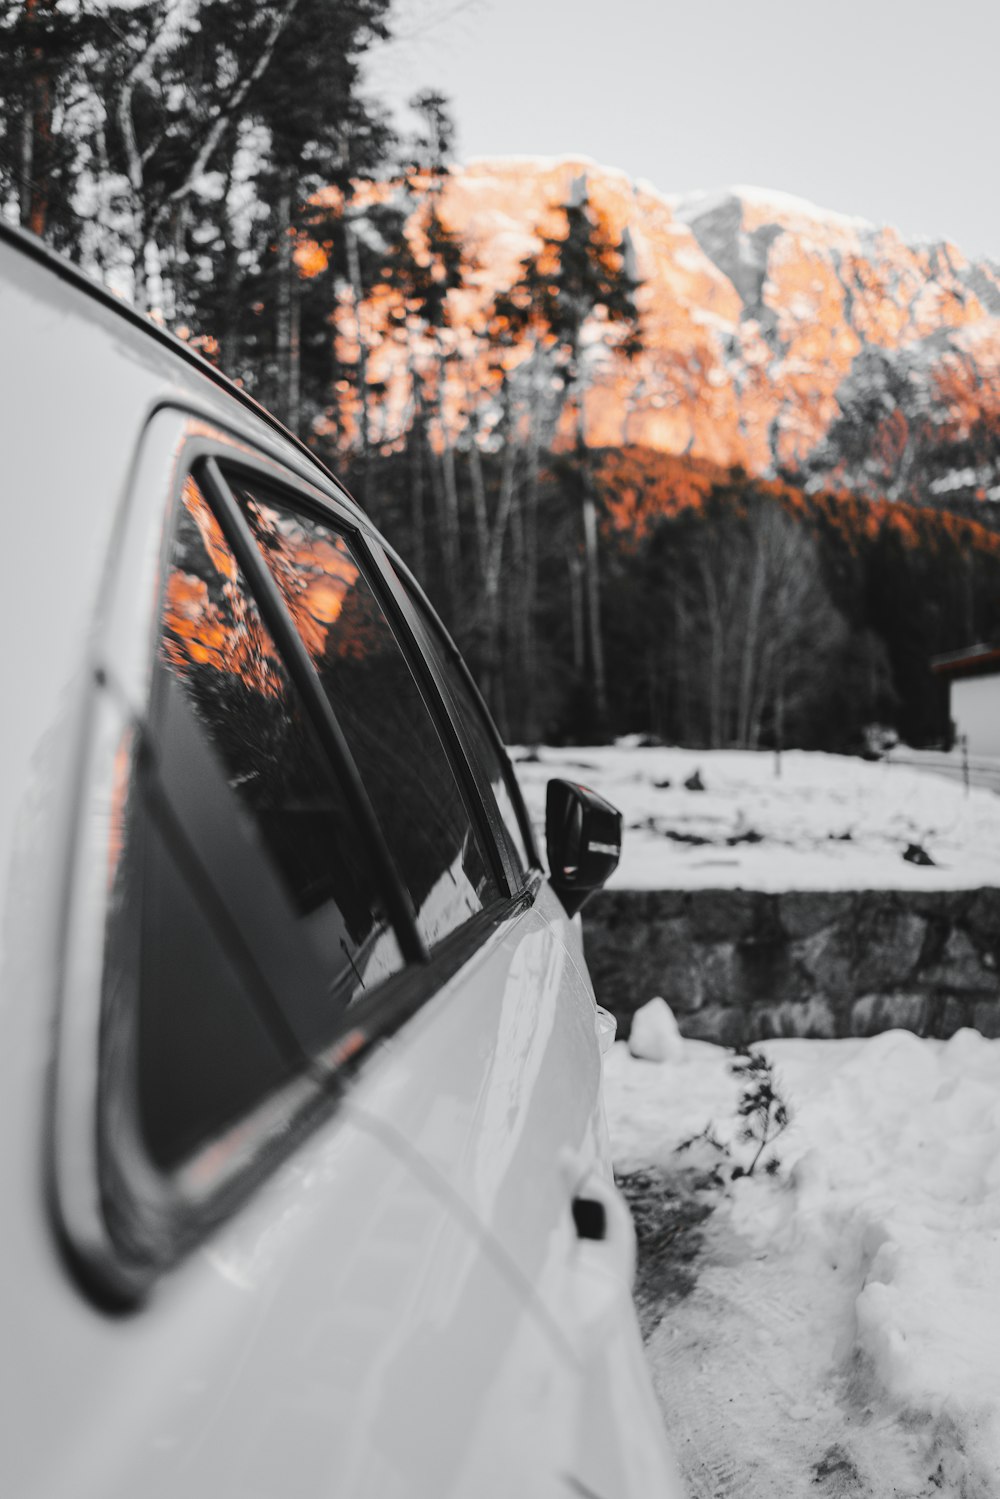 昼間の雪原展望崖に白い車を駐車